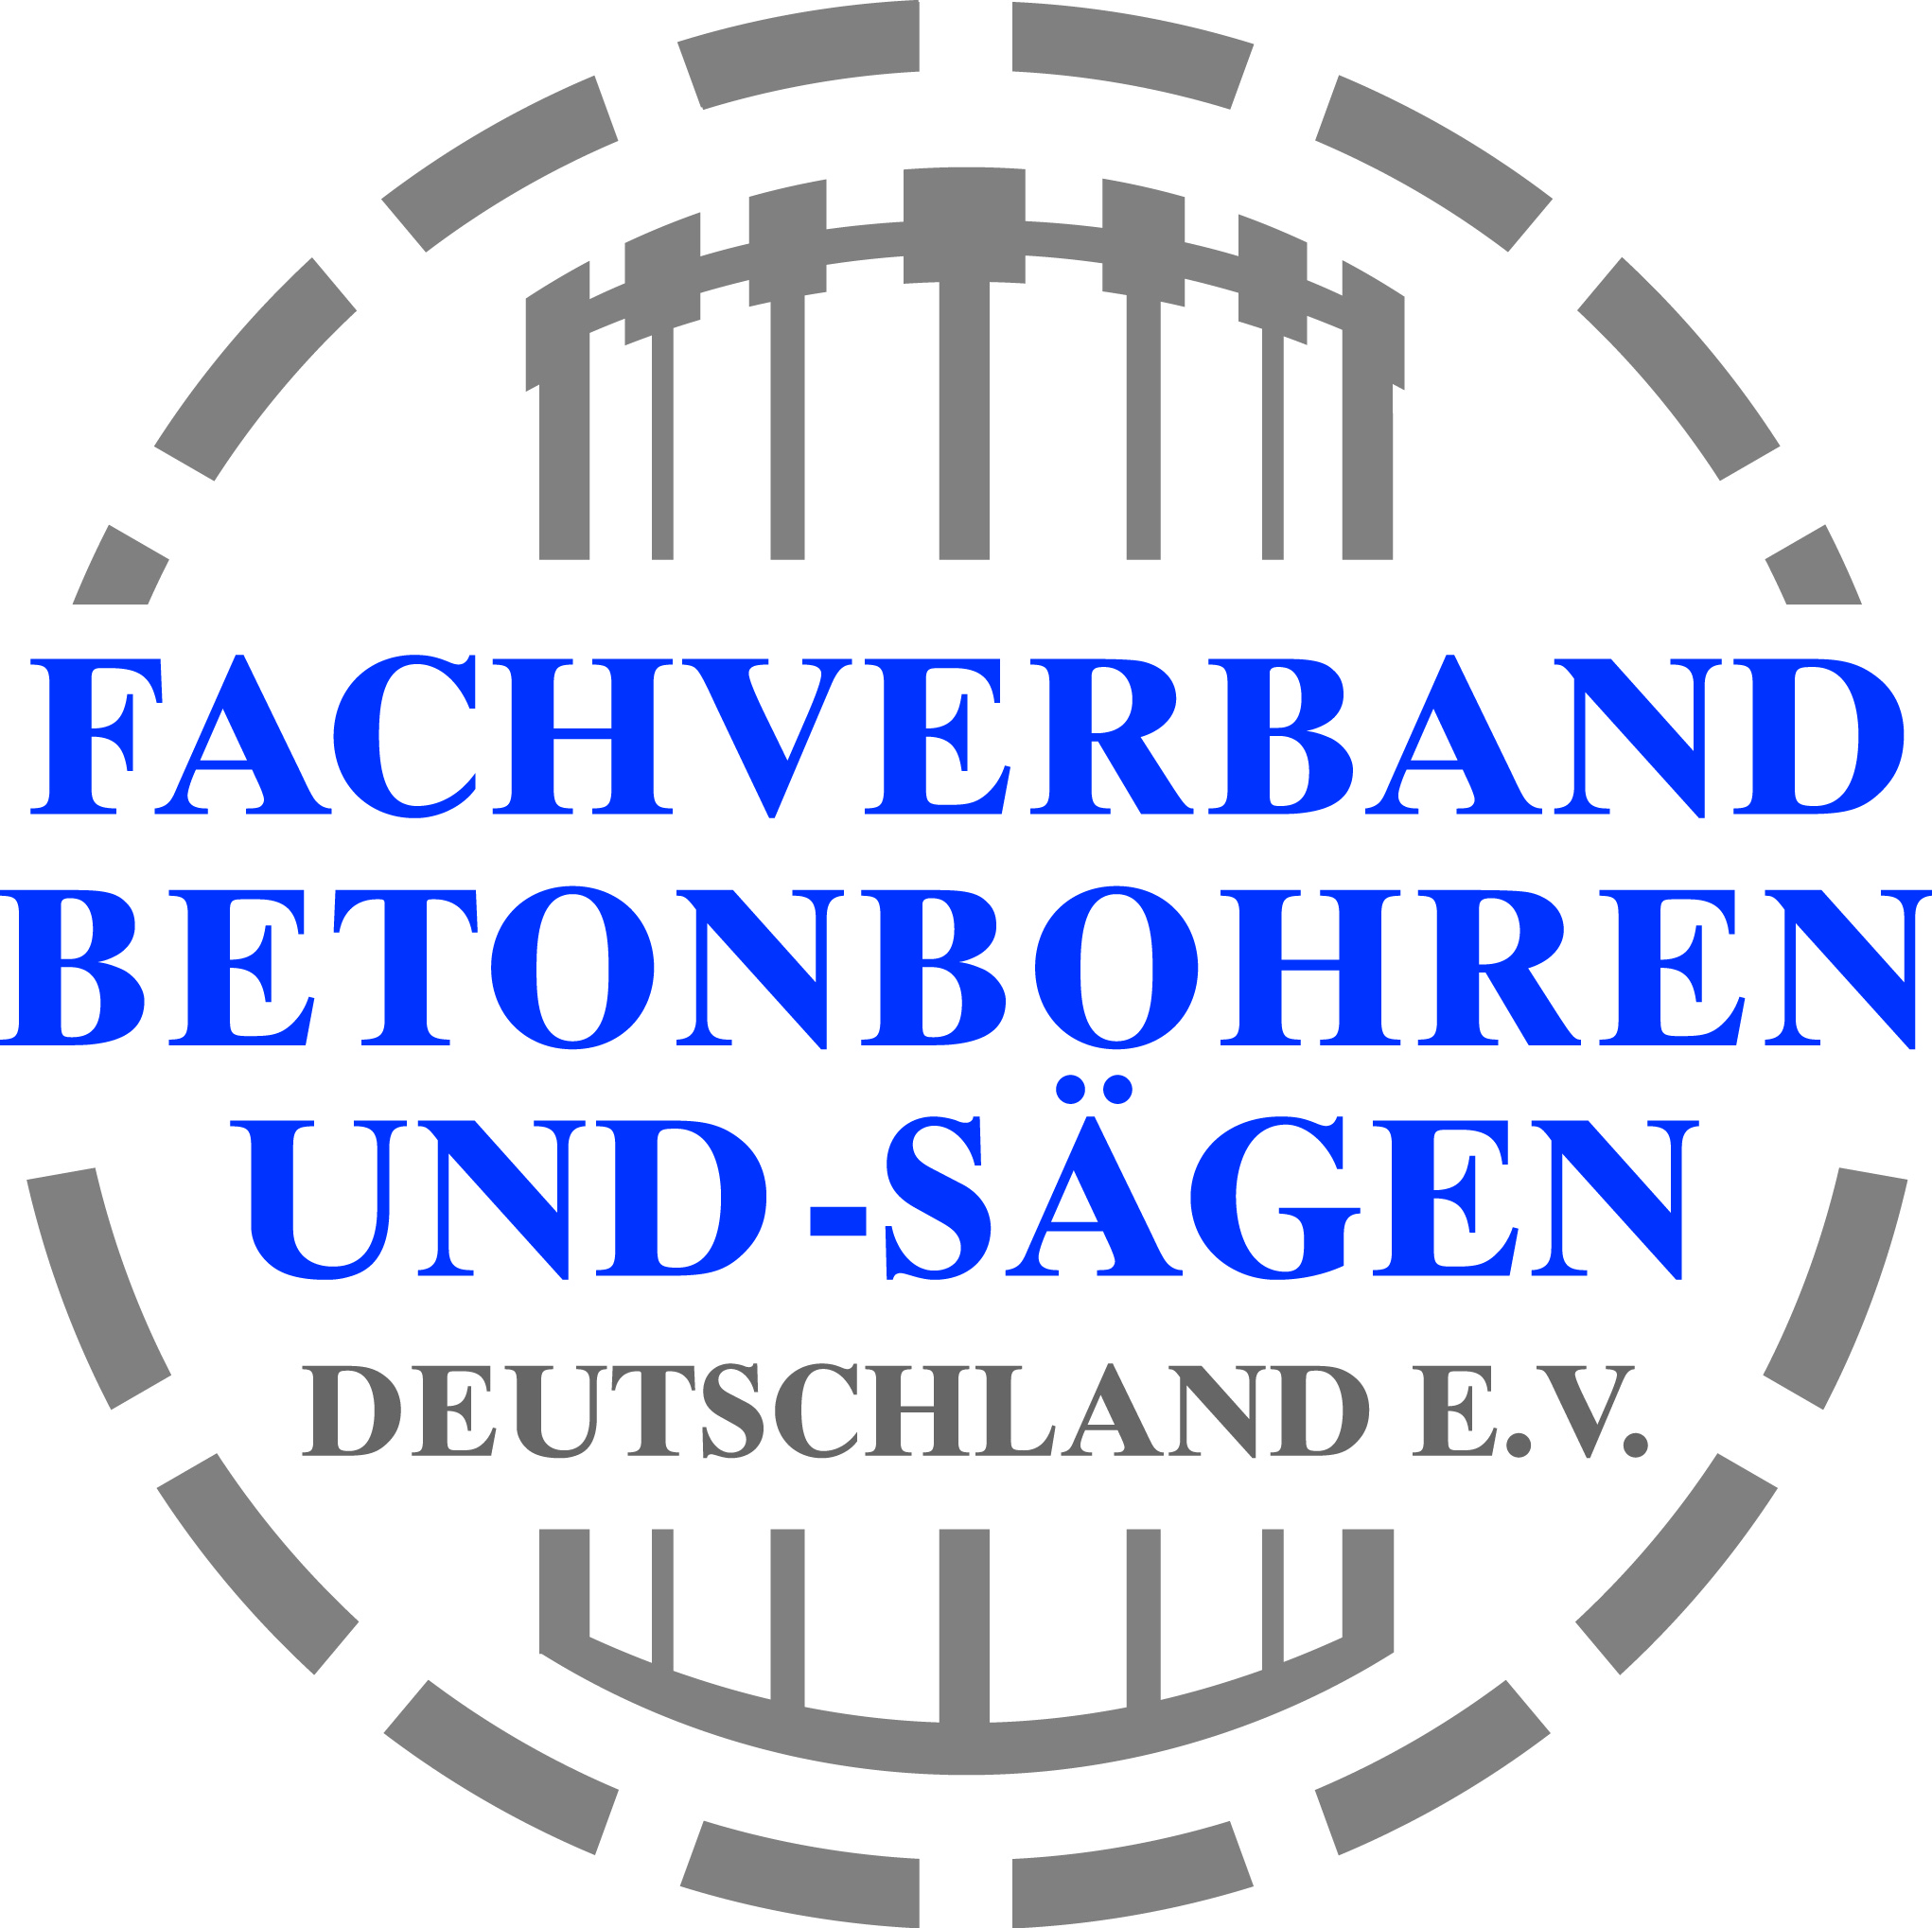 Fachverband Betonboren und Sägen - Deutschland E.V.